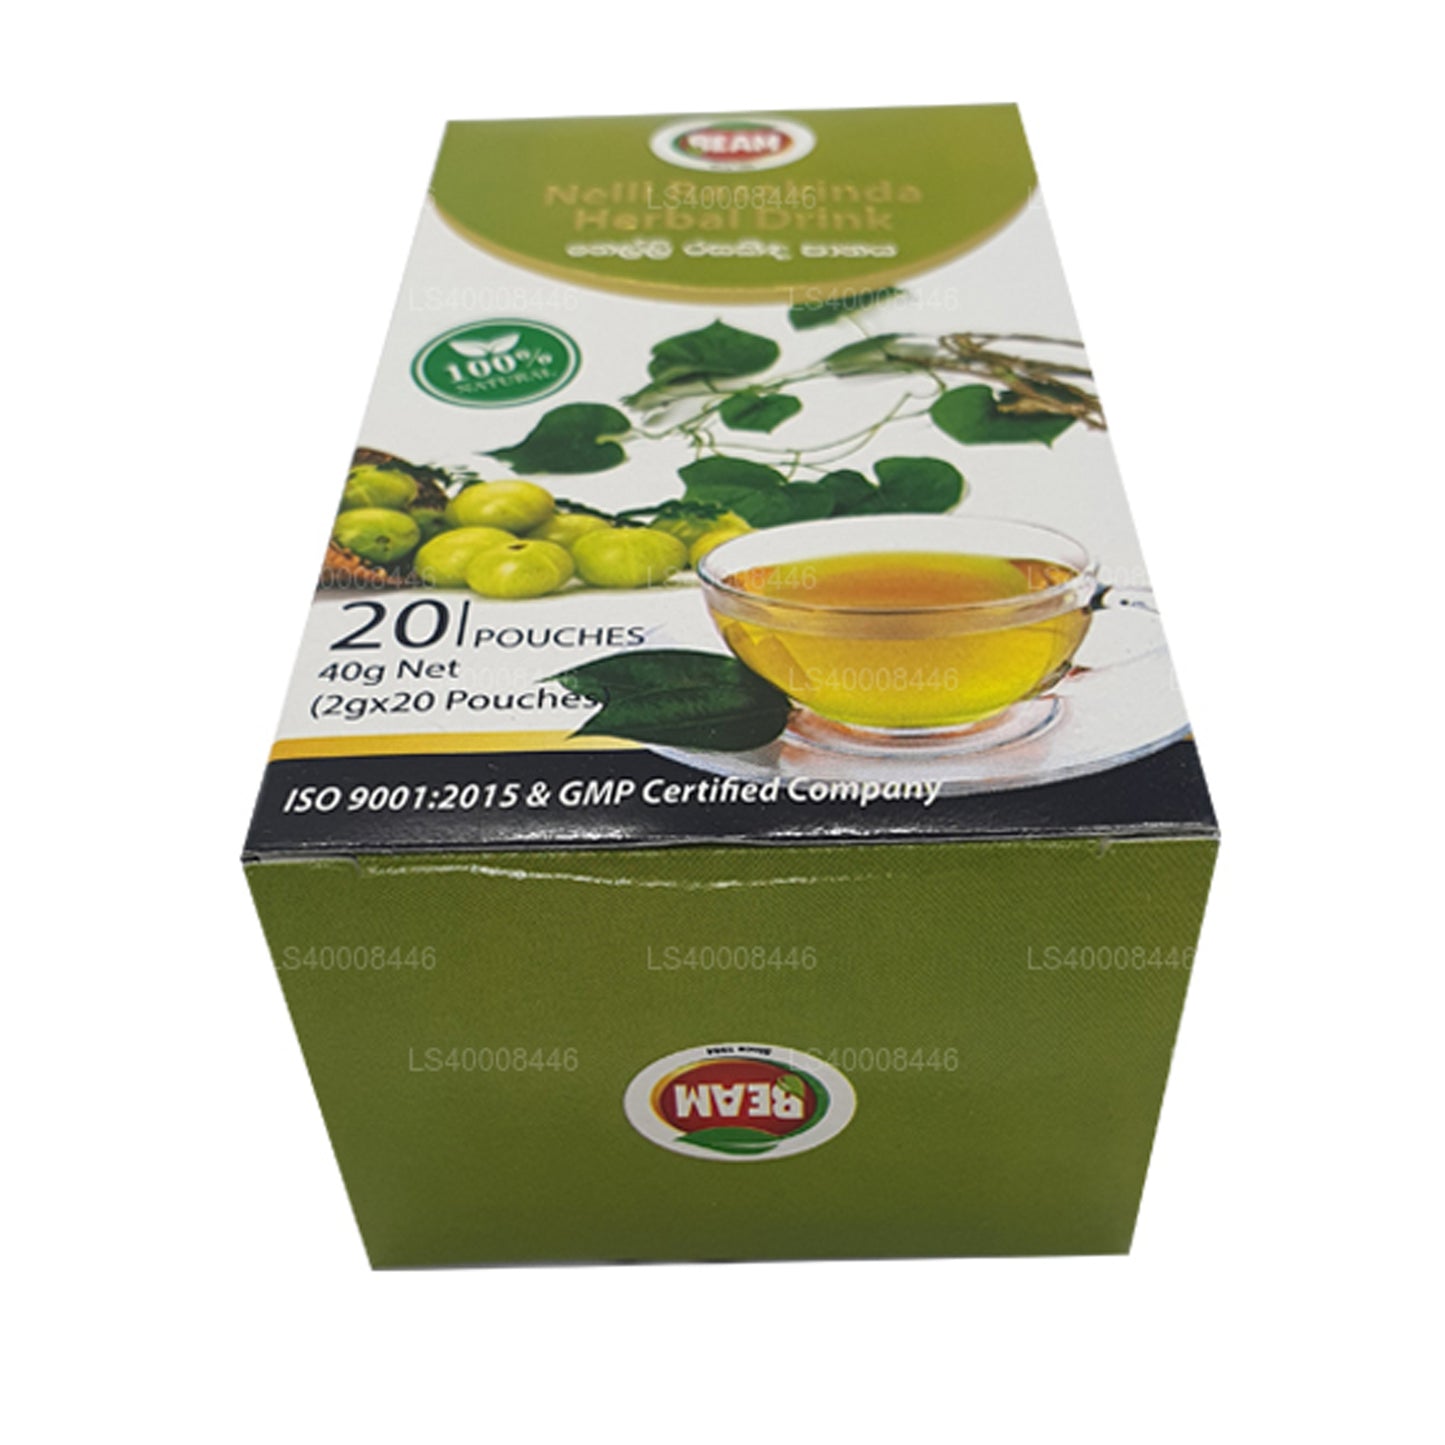 Beam Nelli Rasakinda Napój ziołowy (40g) 20 torebek herbaty